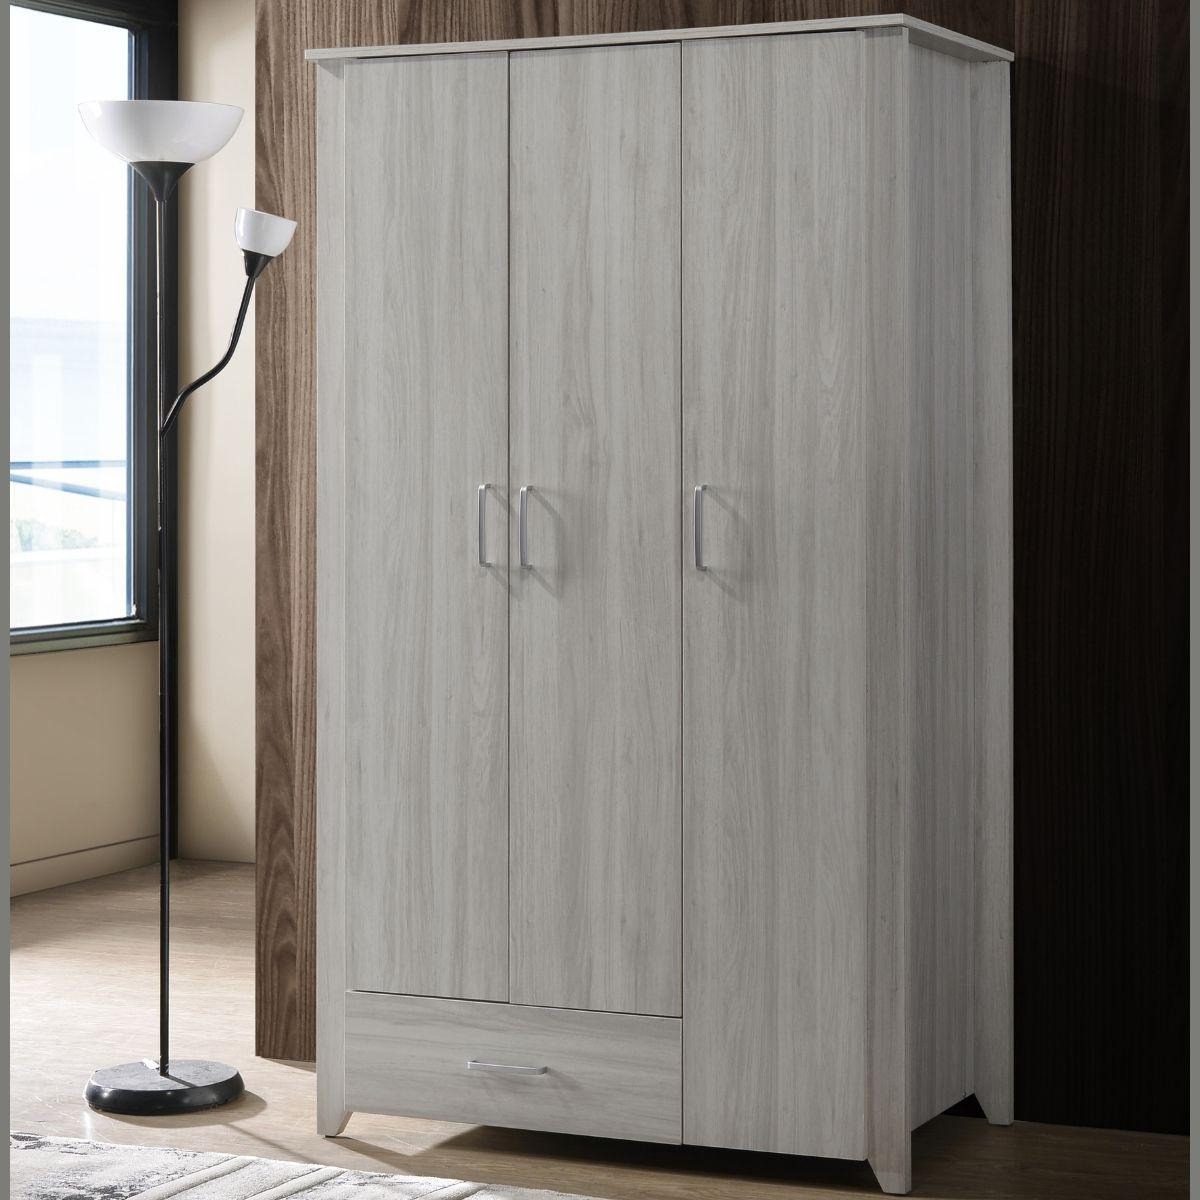 Large 3 Door Wardrobe Bedroom Storage Cabinet Closet